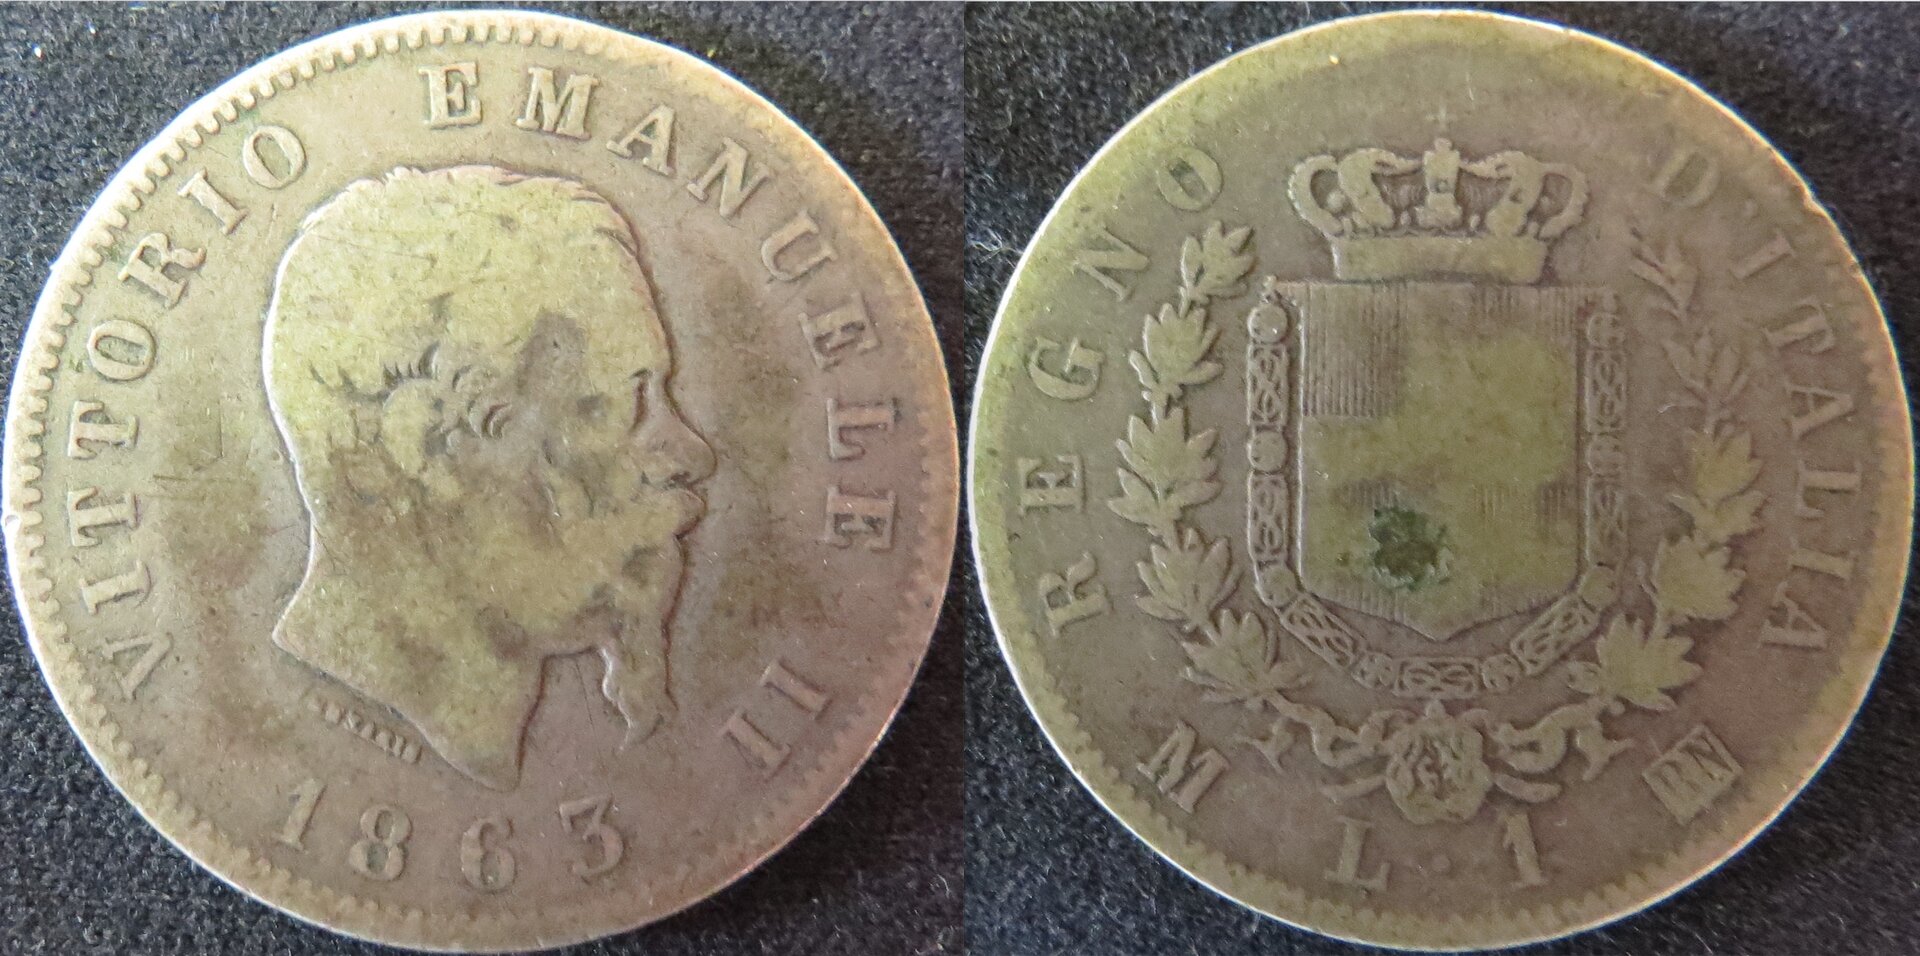 Italy 1863 M 1 Lira copy.jpeg